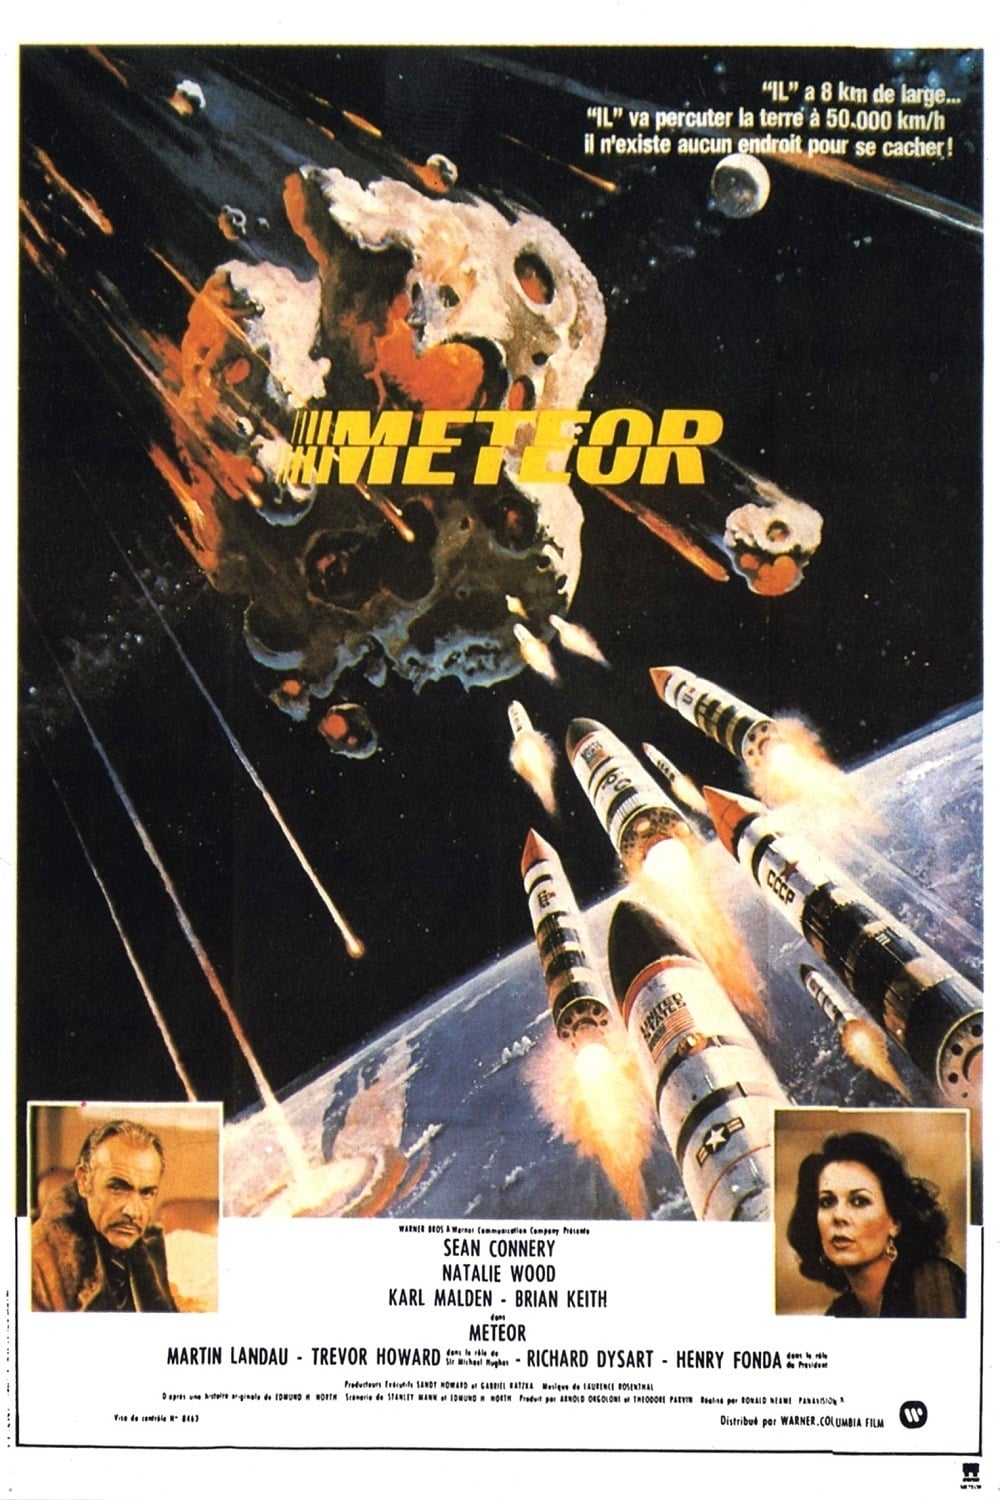 Meteor est-il disponible sur Netflix ou autre ?